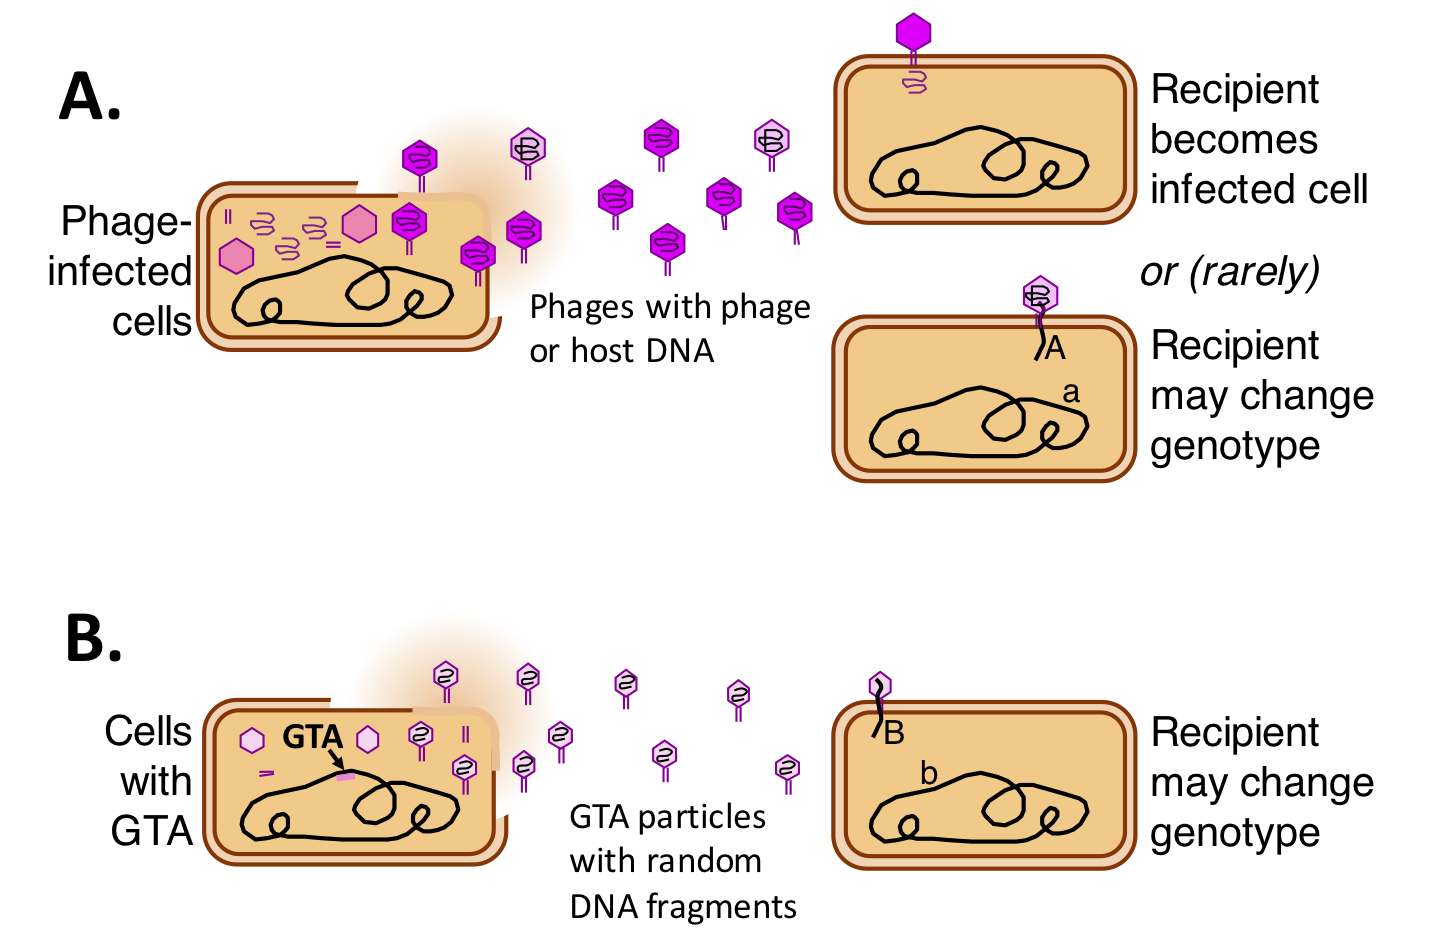 Phage and GTA